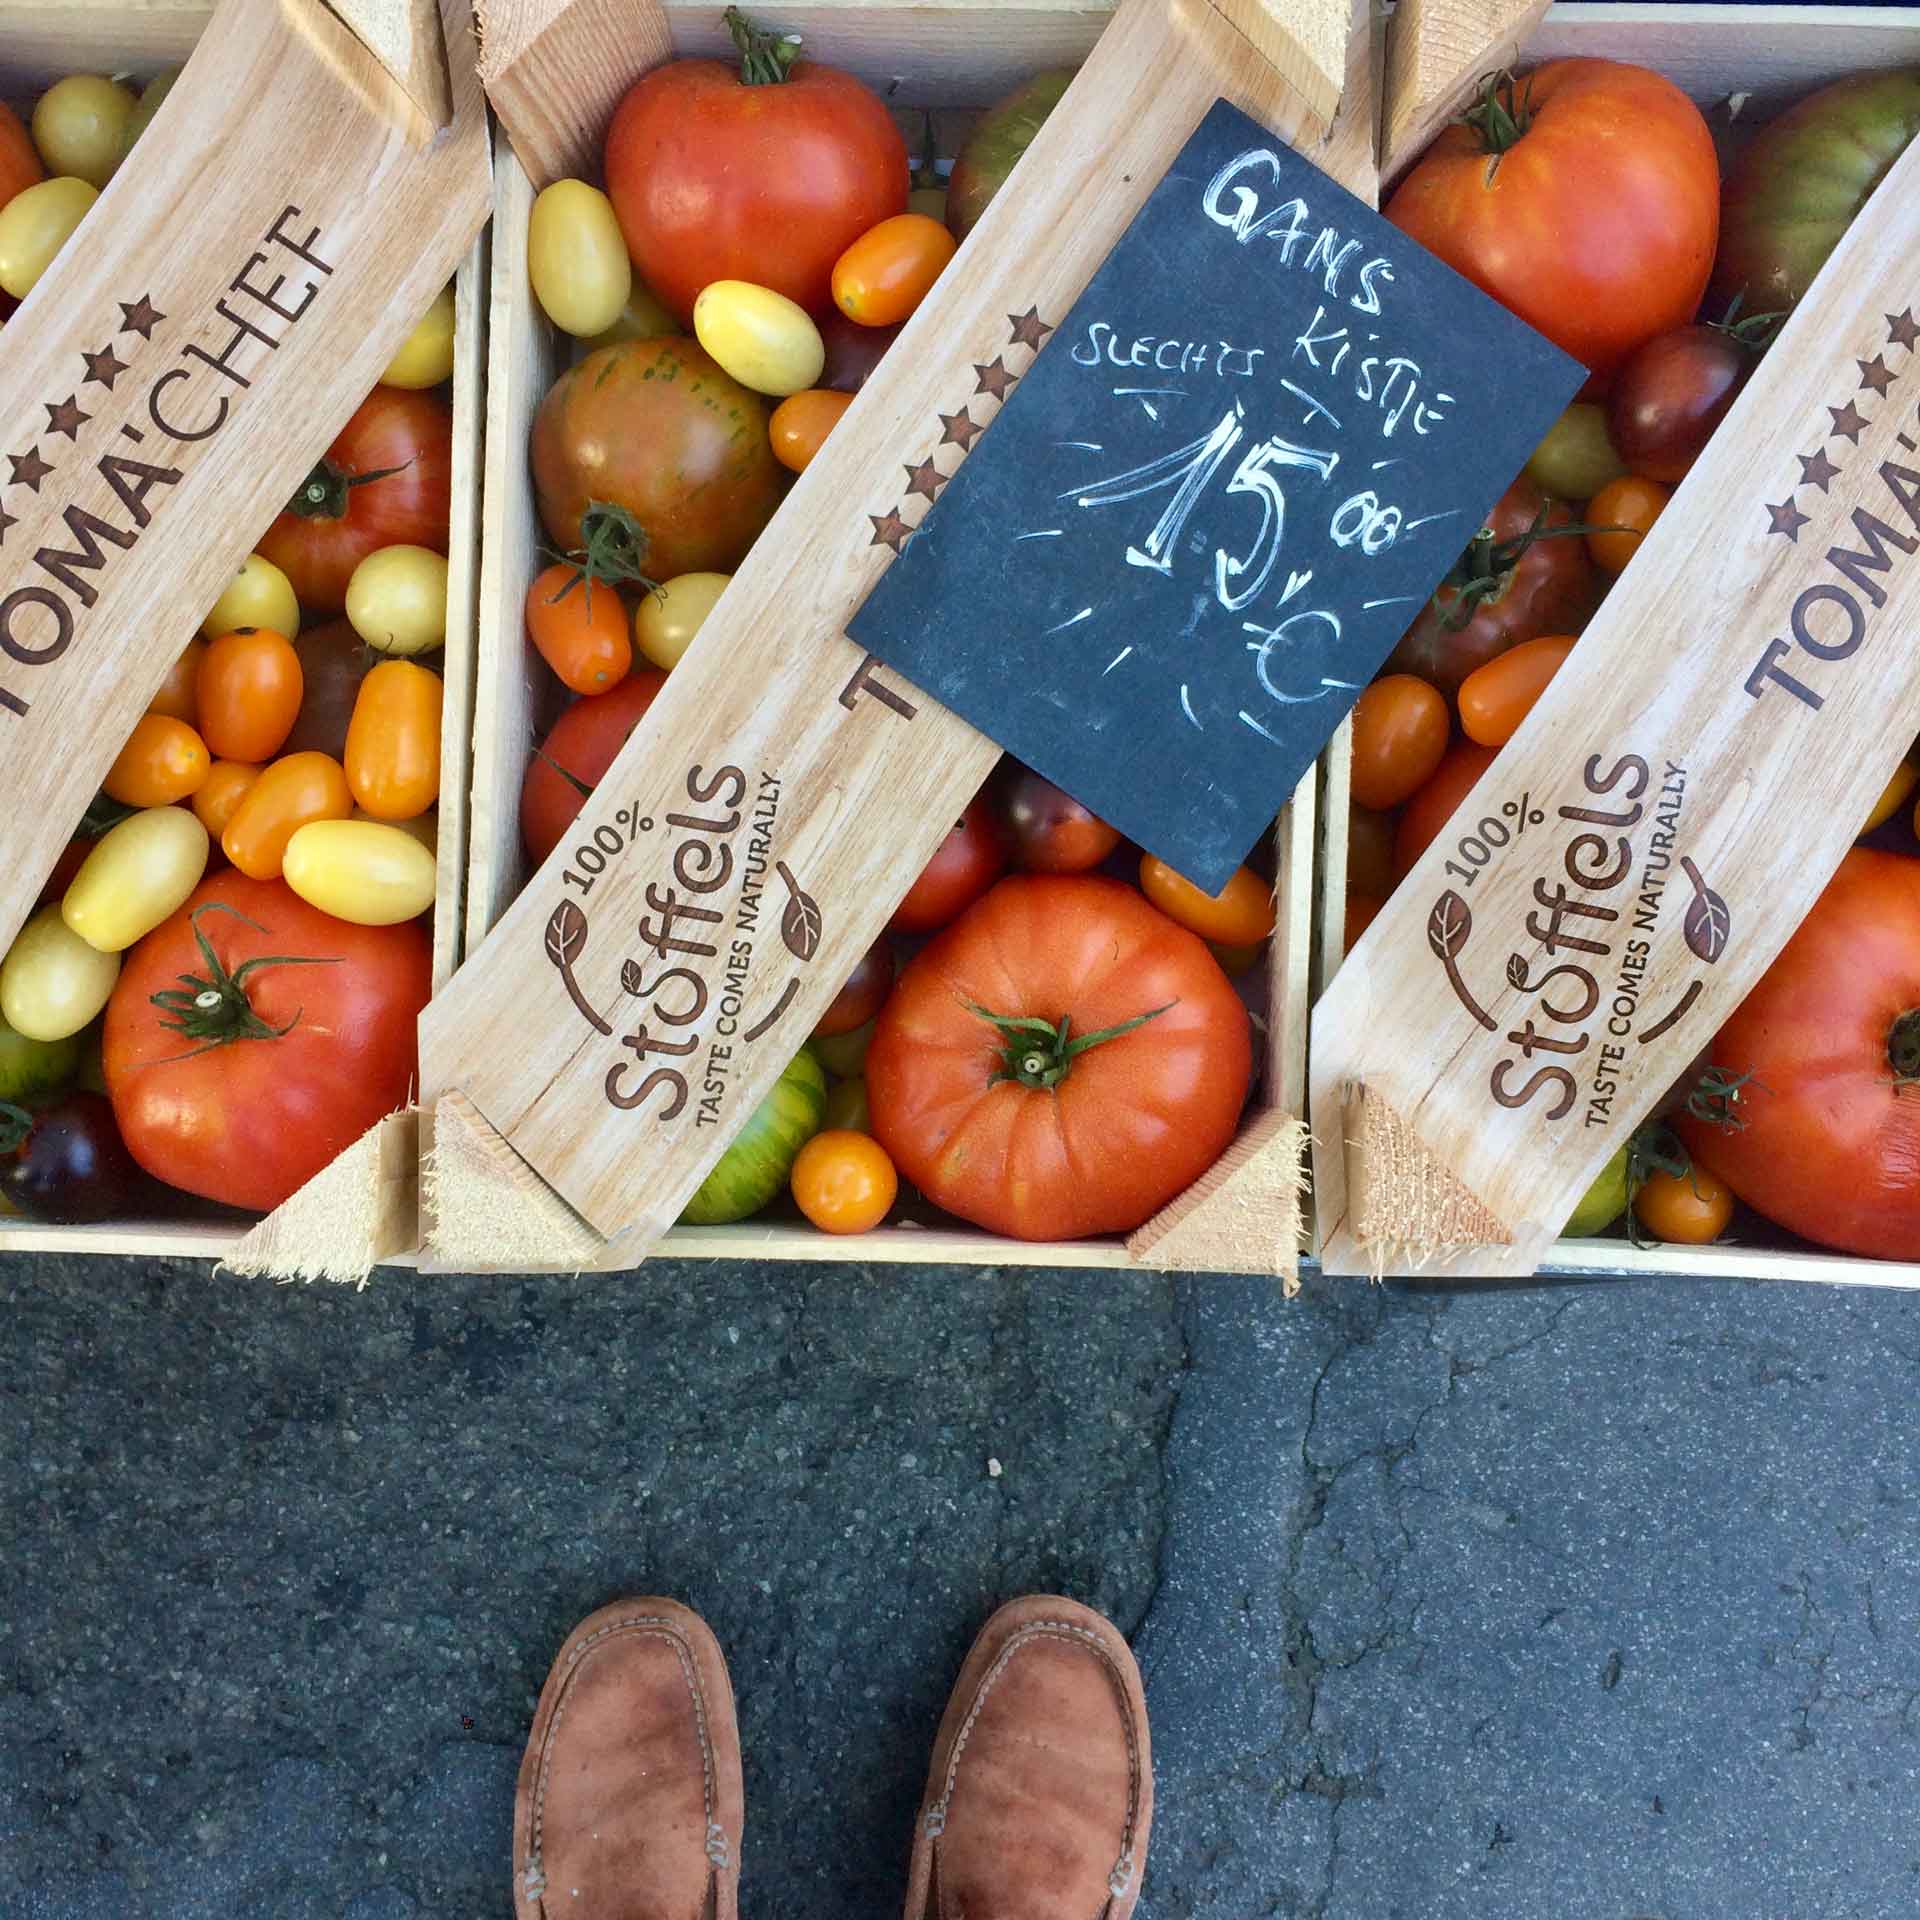 Variatie aan tomaten op de markt